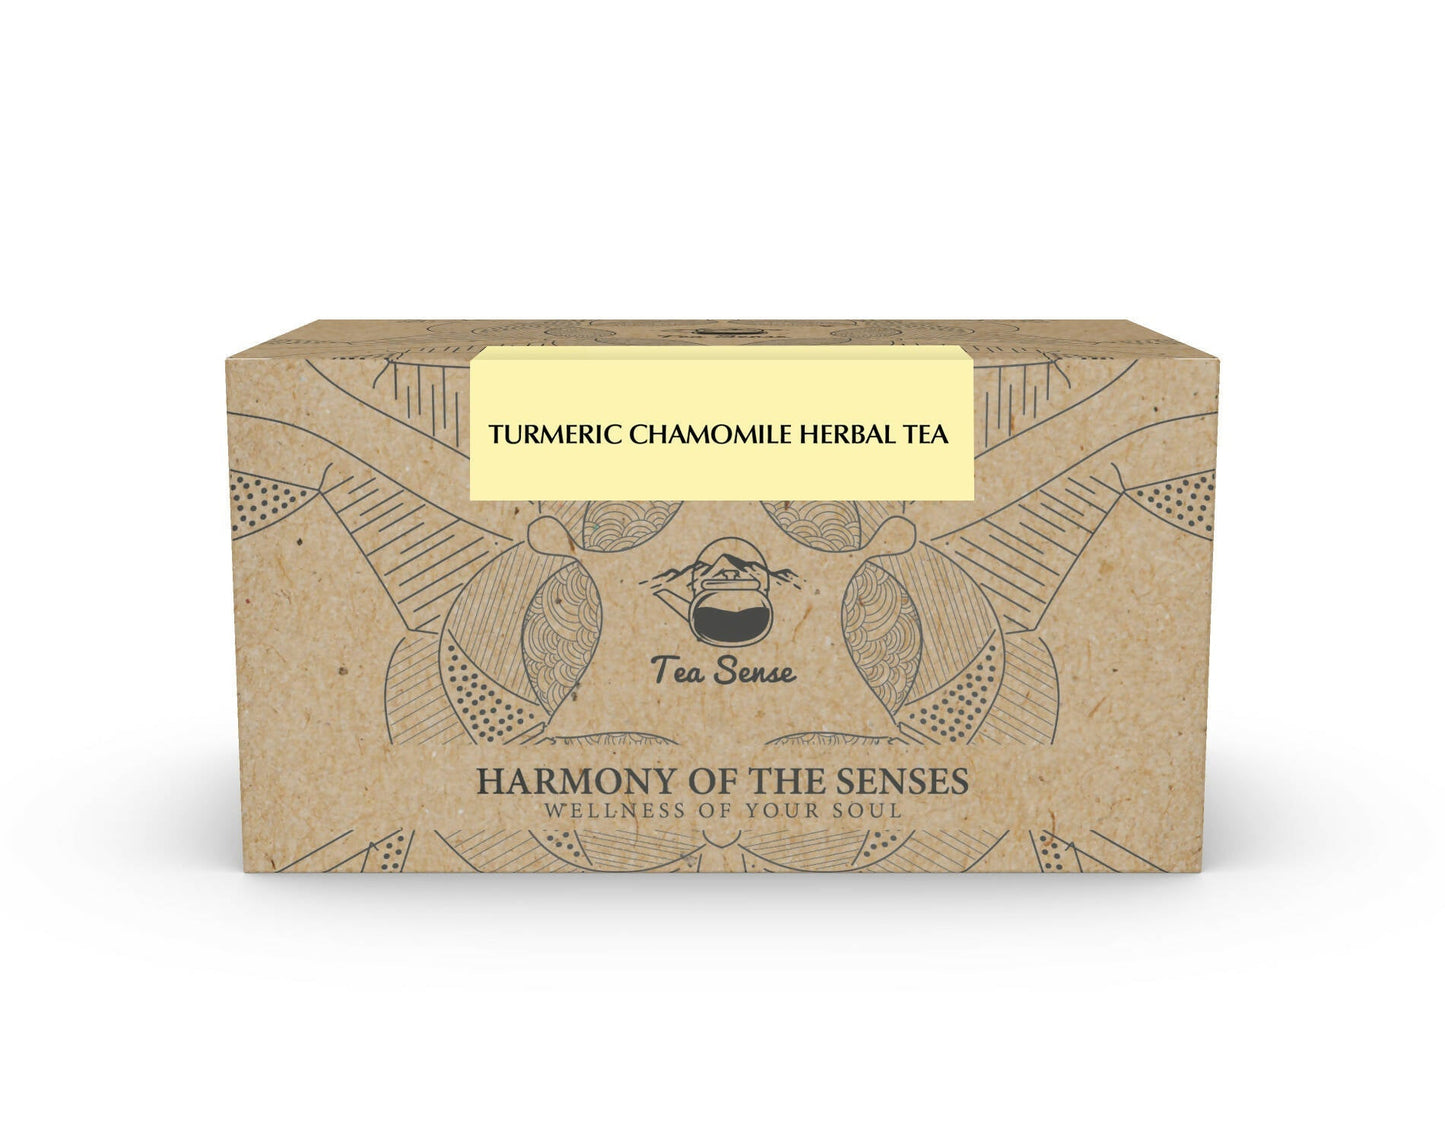 Tea Sense Turmeric Chamomile Tea Bags Box - buy in USA, Australia, Canada